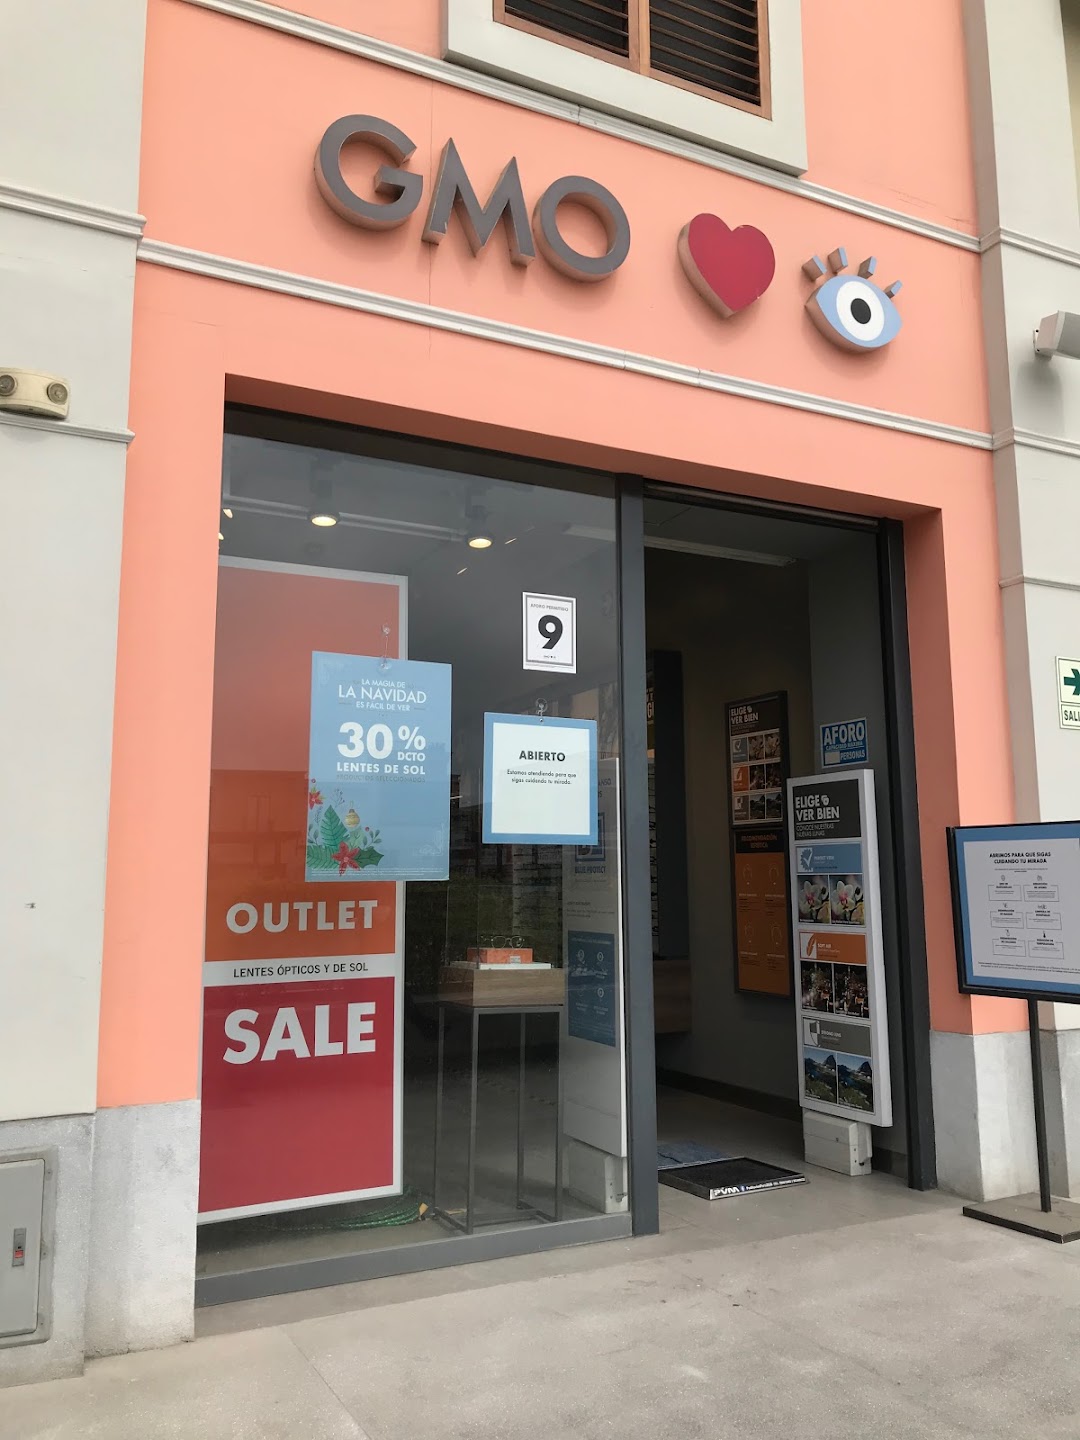 GMO Peru